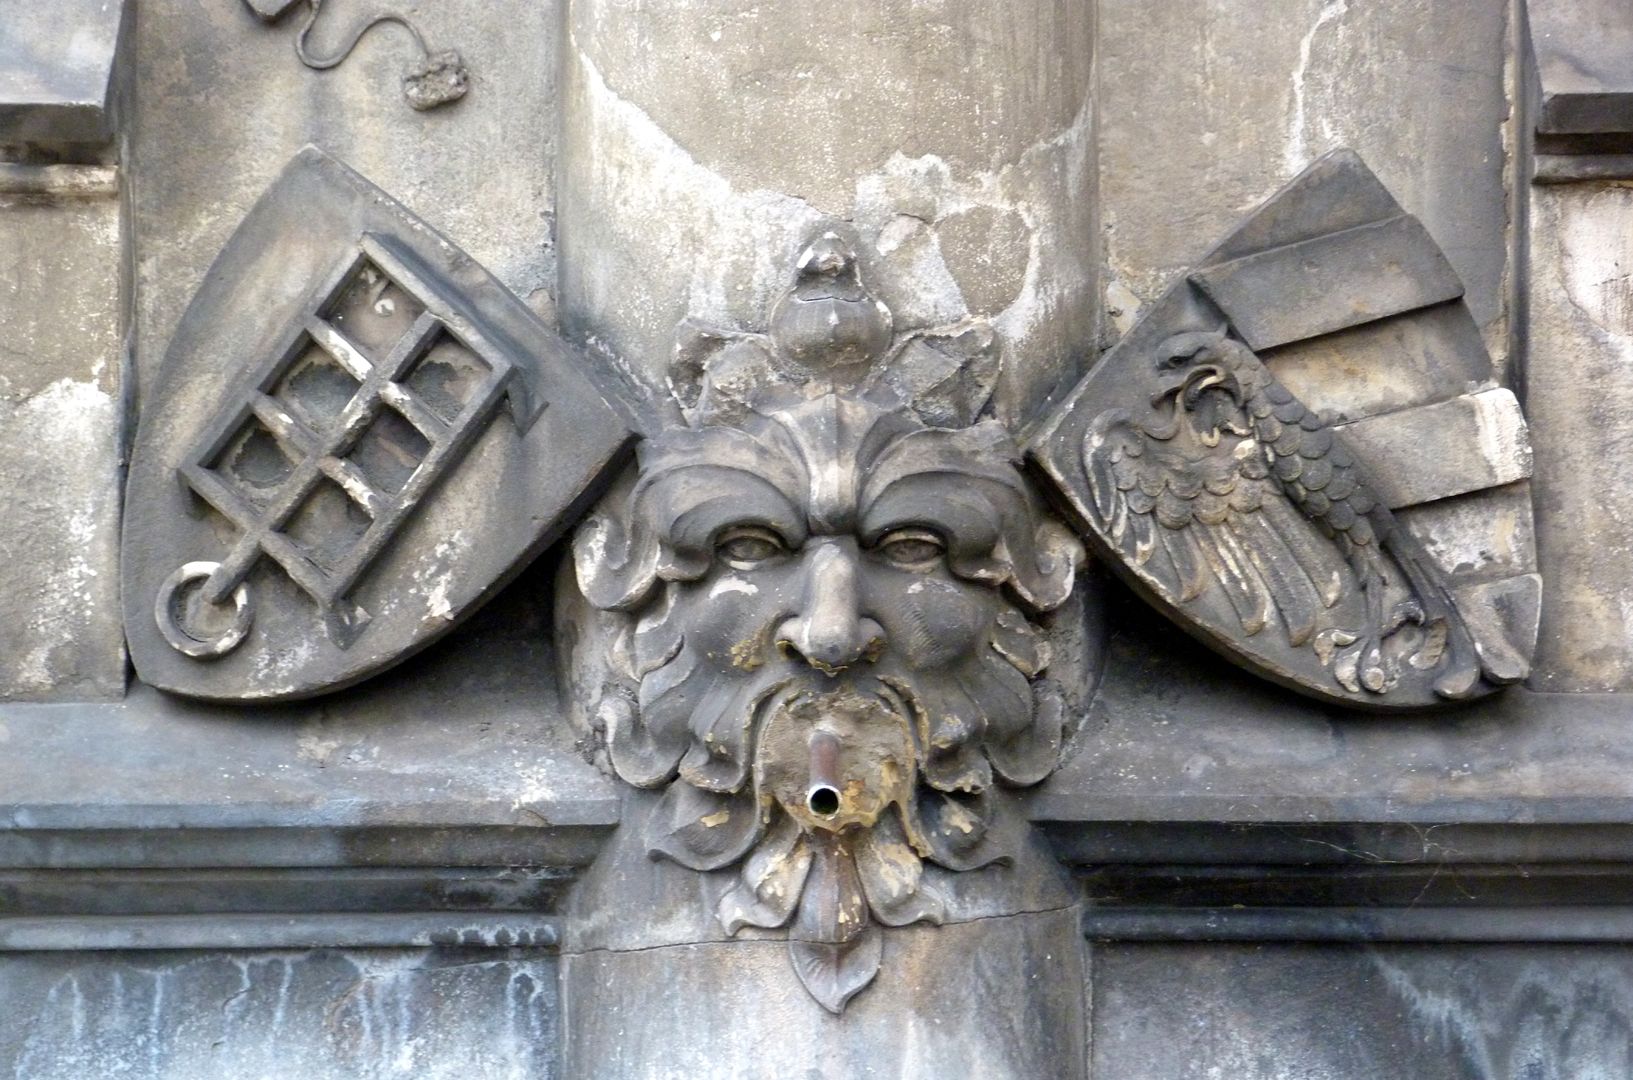 Teufleinsbrunnen Wasserspeier mit Blattmaske in der Mitte, links mit dem Wappen von St. Lorenz (Darstellung des Rostes auf dem er gemartert wurde) und rechts das Stadtwappen Nürnberg